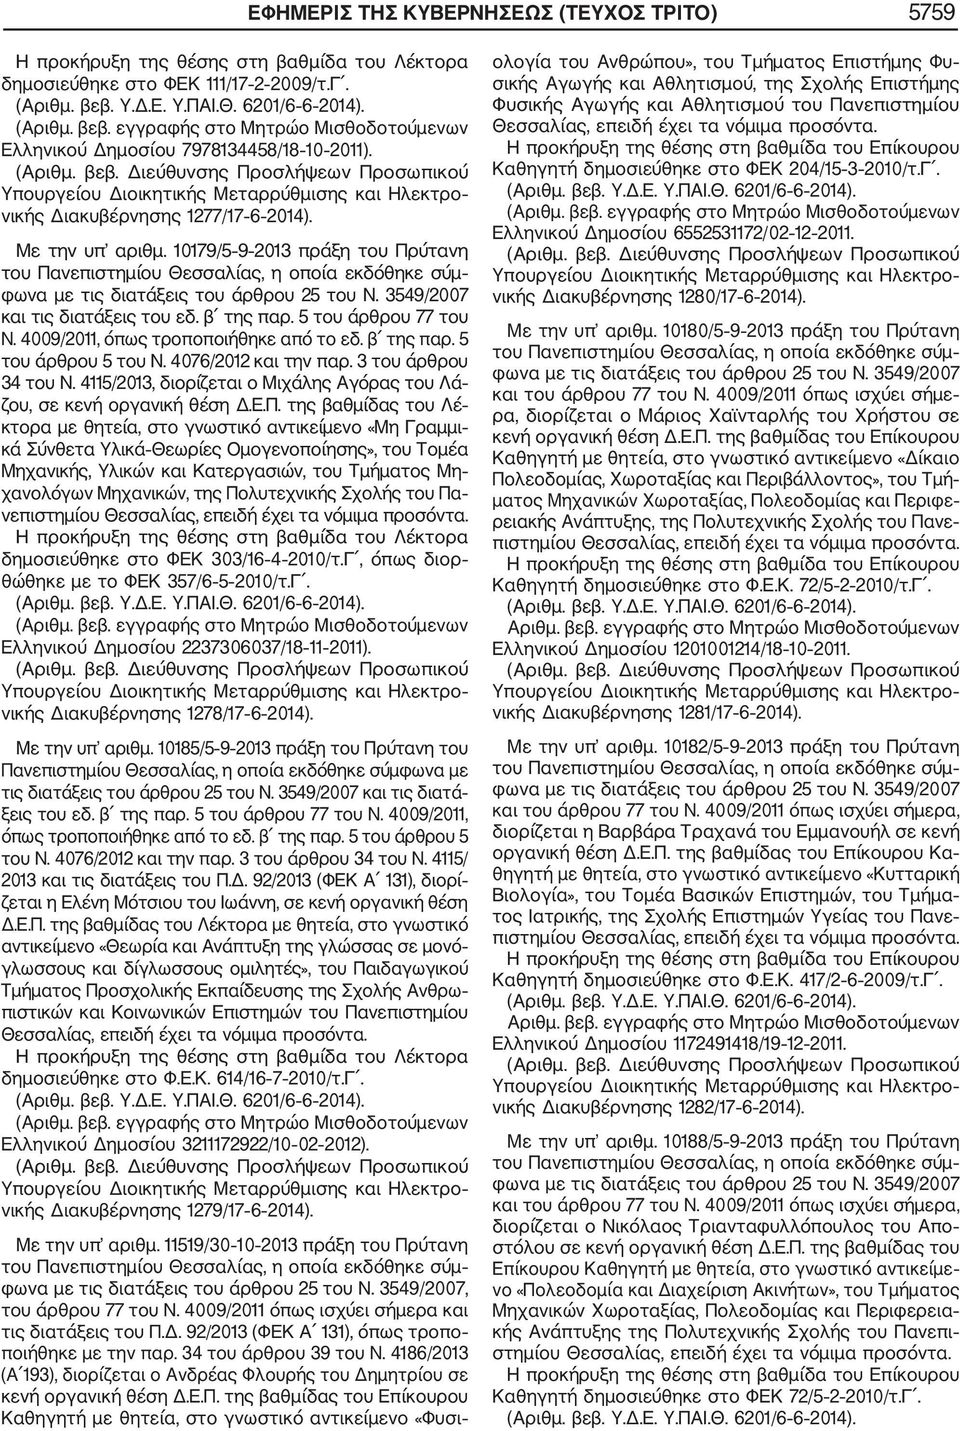 3 του άρθρου 34 του Ν. 4115/2013, διορίζεται ο Μιχάλης Αγόρας του Λά ζου, σε κενή οργανική θέση Δ.Ε.Π.